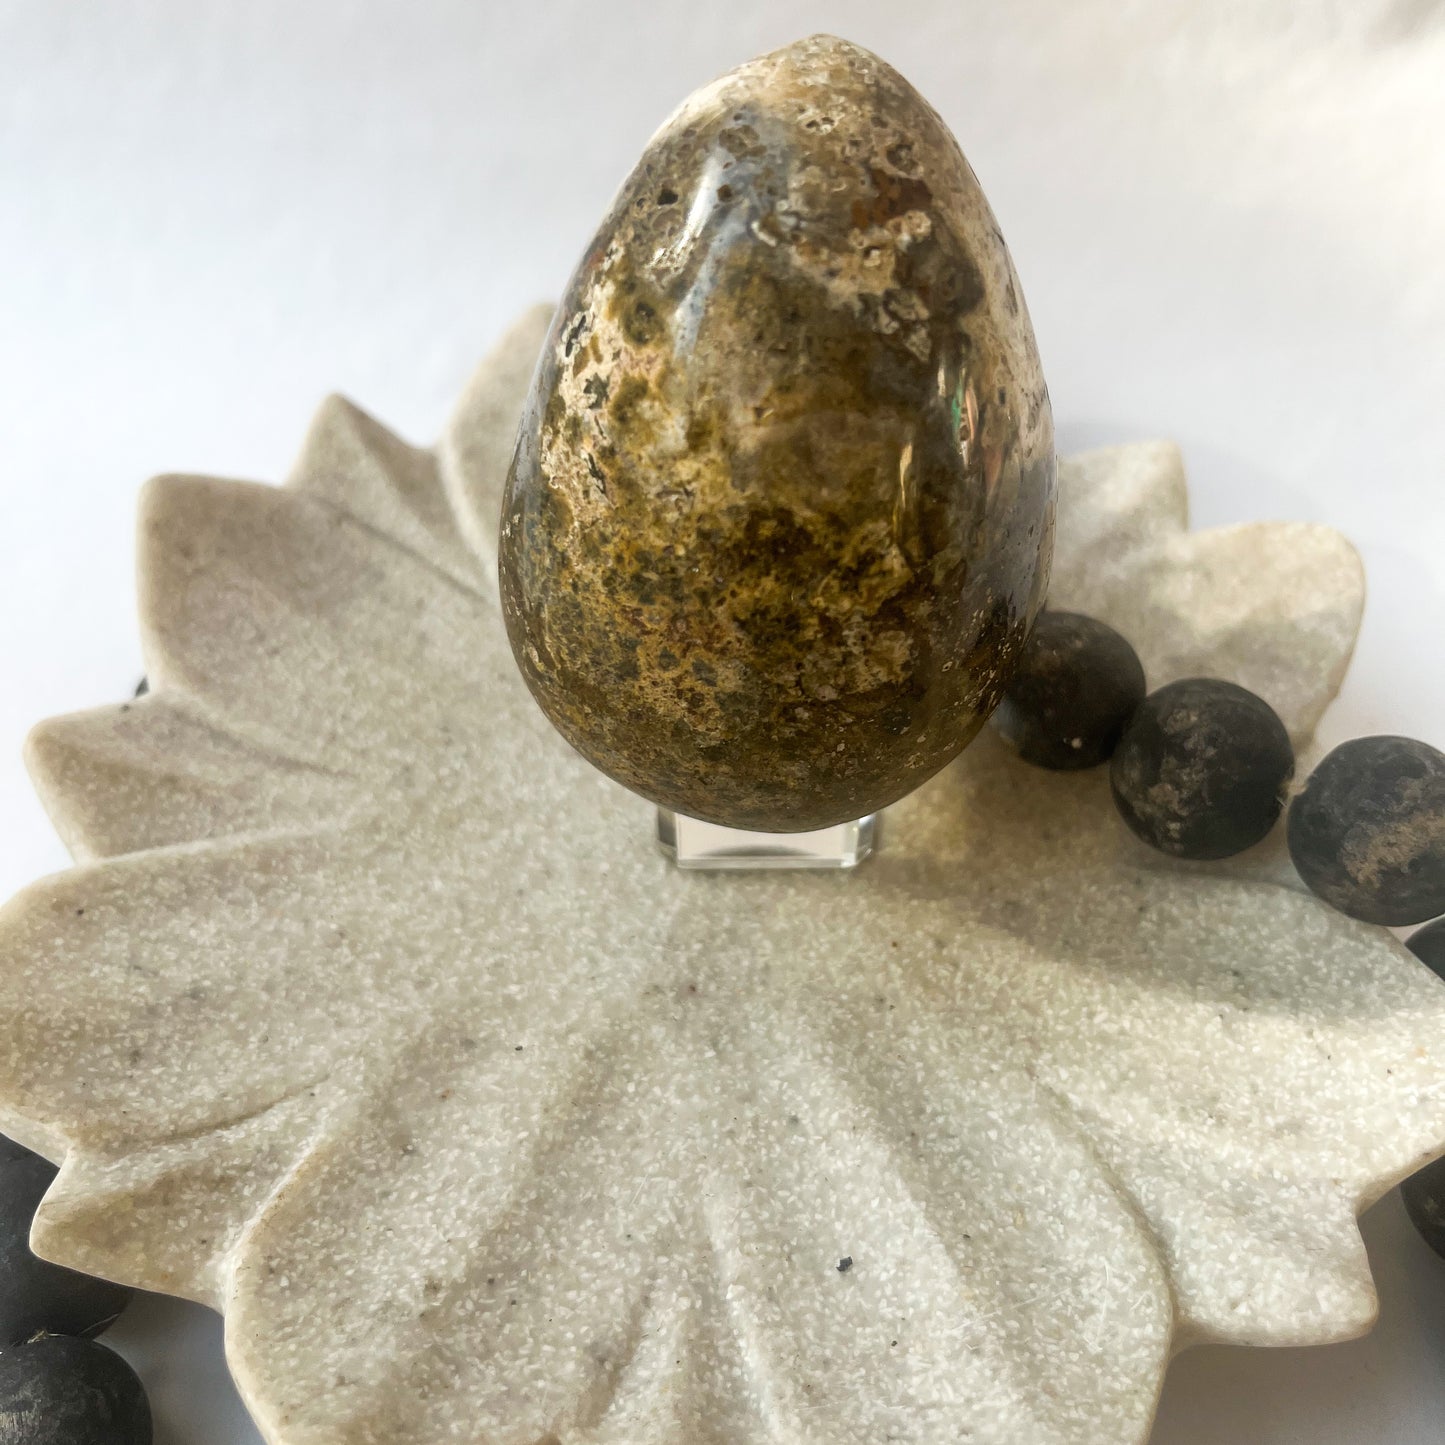 Polished Crystal Shape - Jasper Egg 7.5 cm